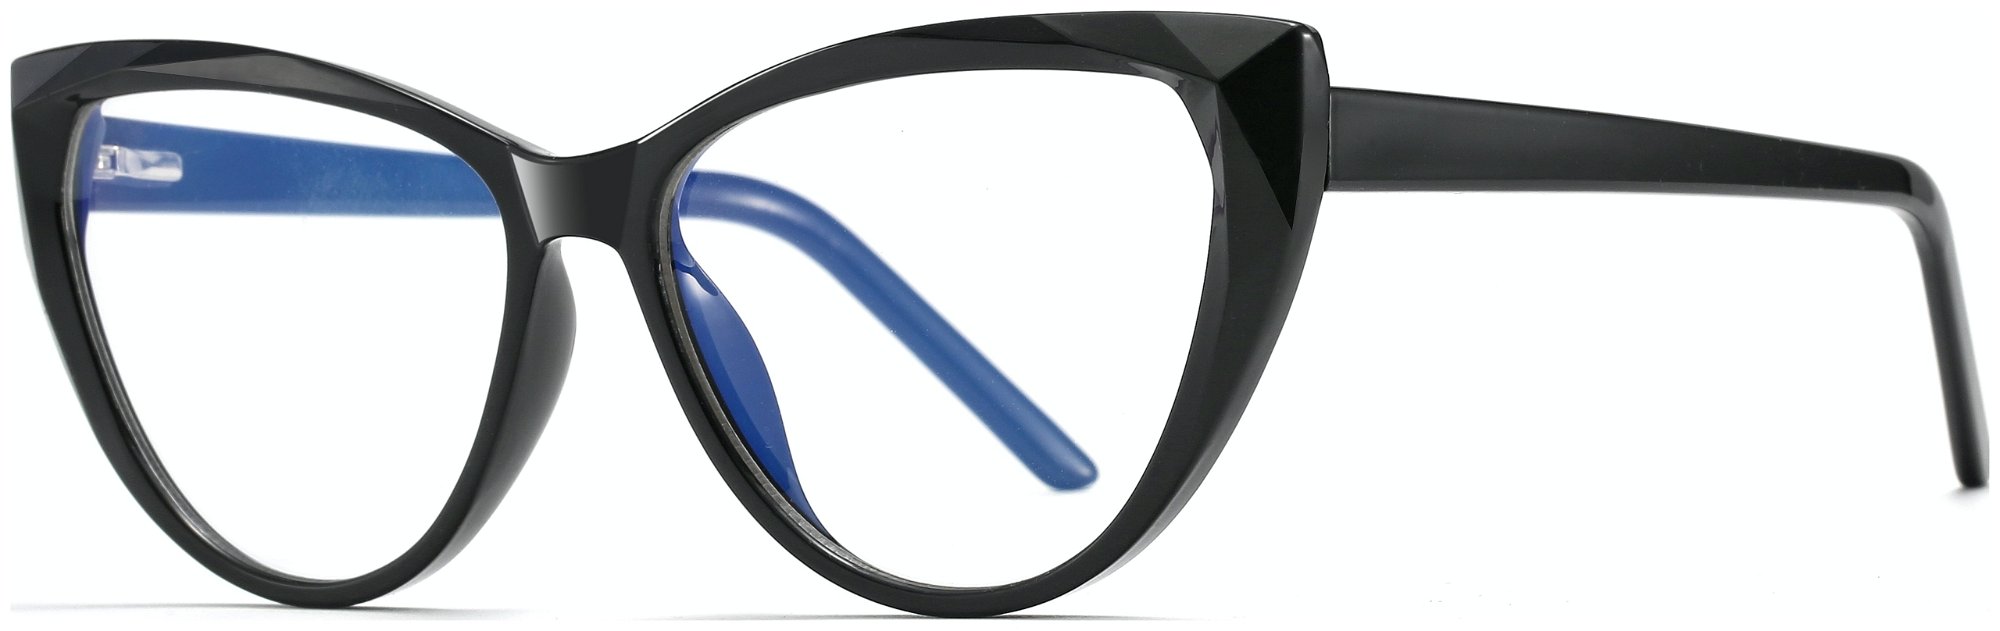 Cat-Eye bluelight briller til kvinder, Flash by Kaleu (H: 5,4 cm. x B: 1,6 cm. x L: 14,7 cm., Sort)